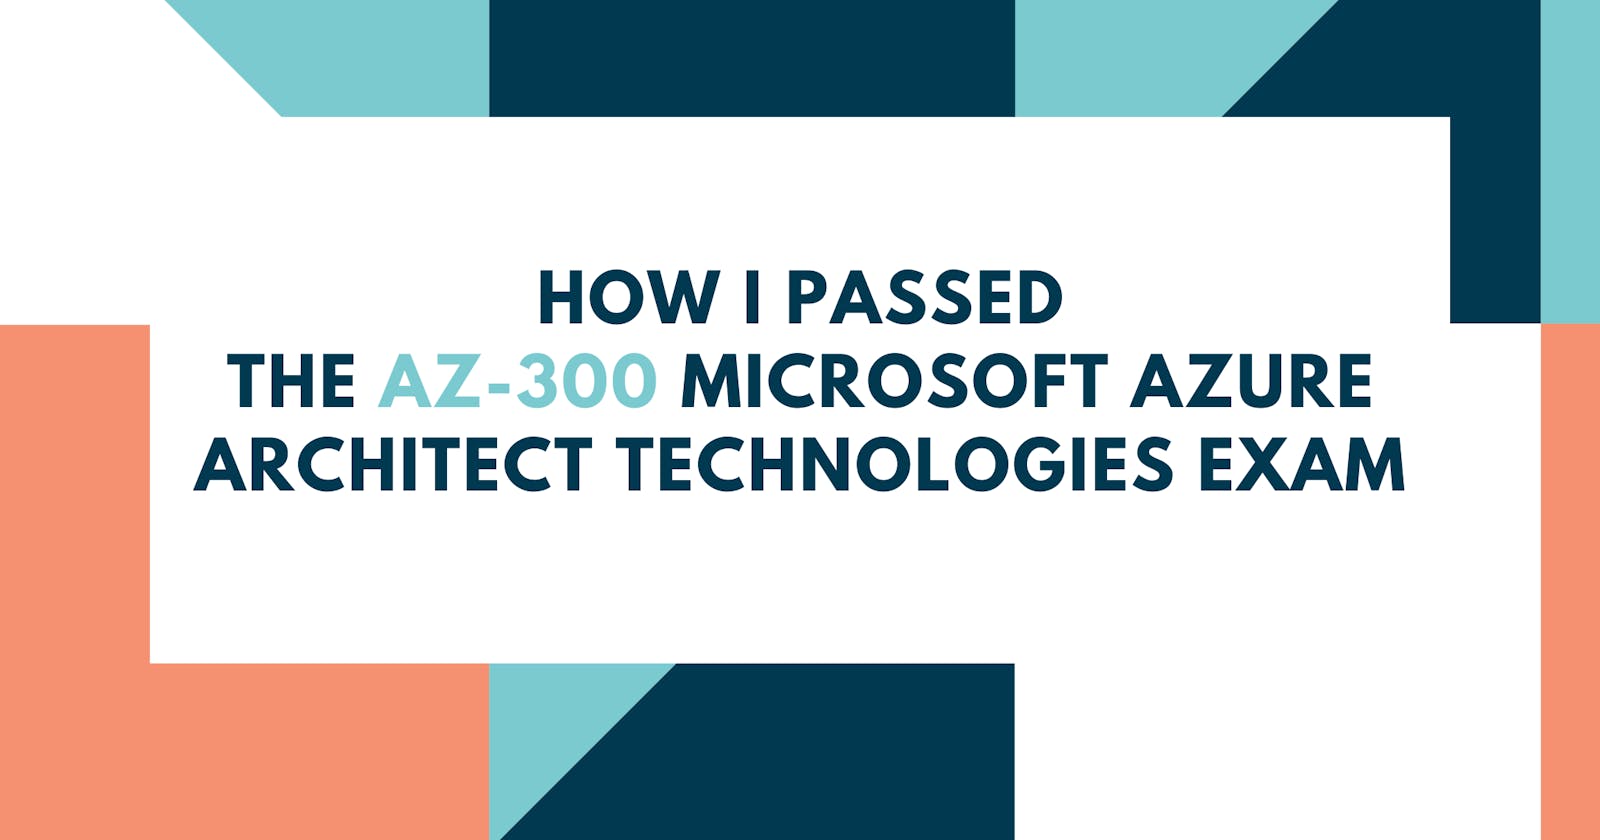 How I Passed the AZ-300 Microsoft Azure Architect Technologies Exam